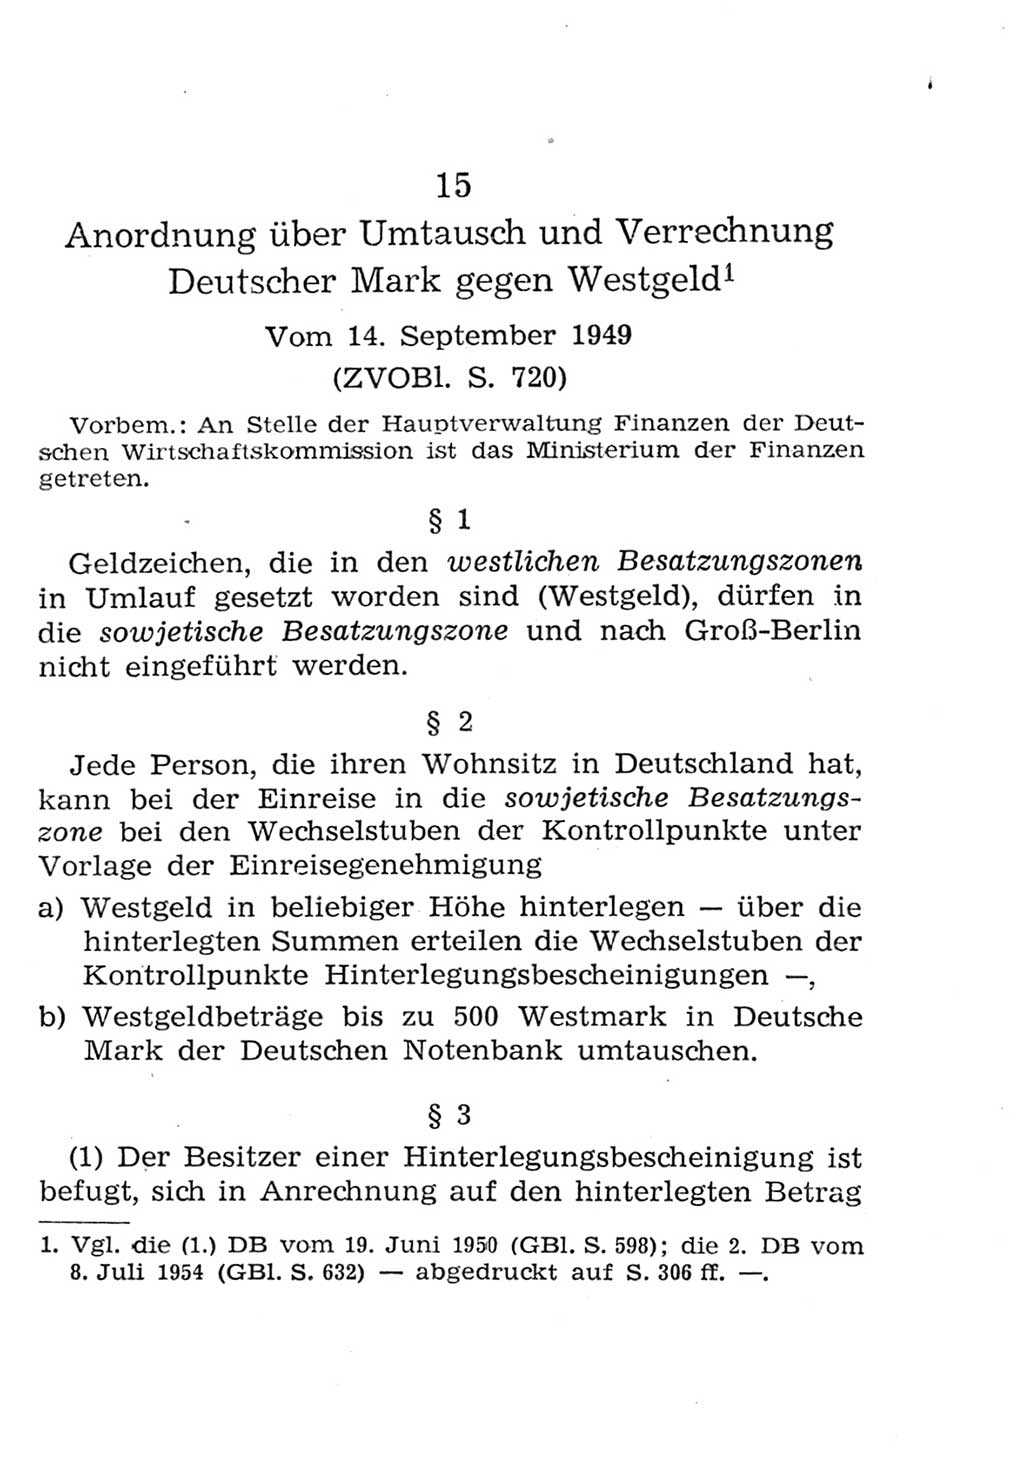 Strafgesetzbuch (StGB) und andere Strafgesetze [Deutsche Demokratische Republik (DDR)] 1957, Seite 303 (StGB Strafges. DDR 1957, S. 303)